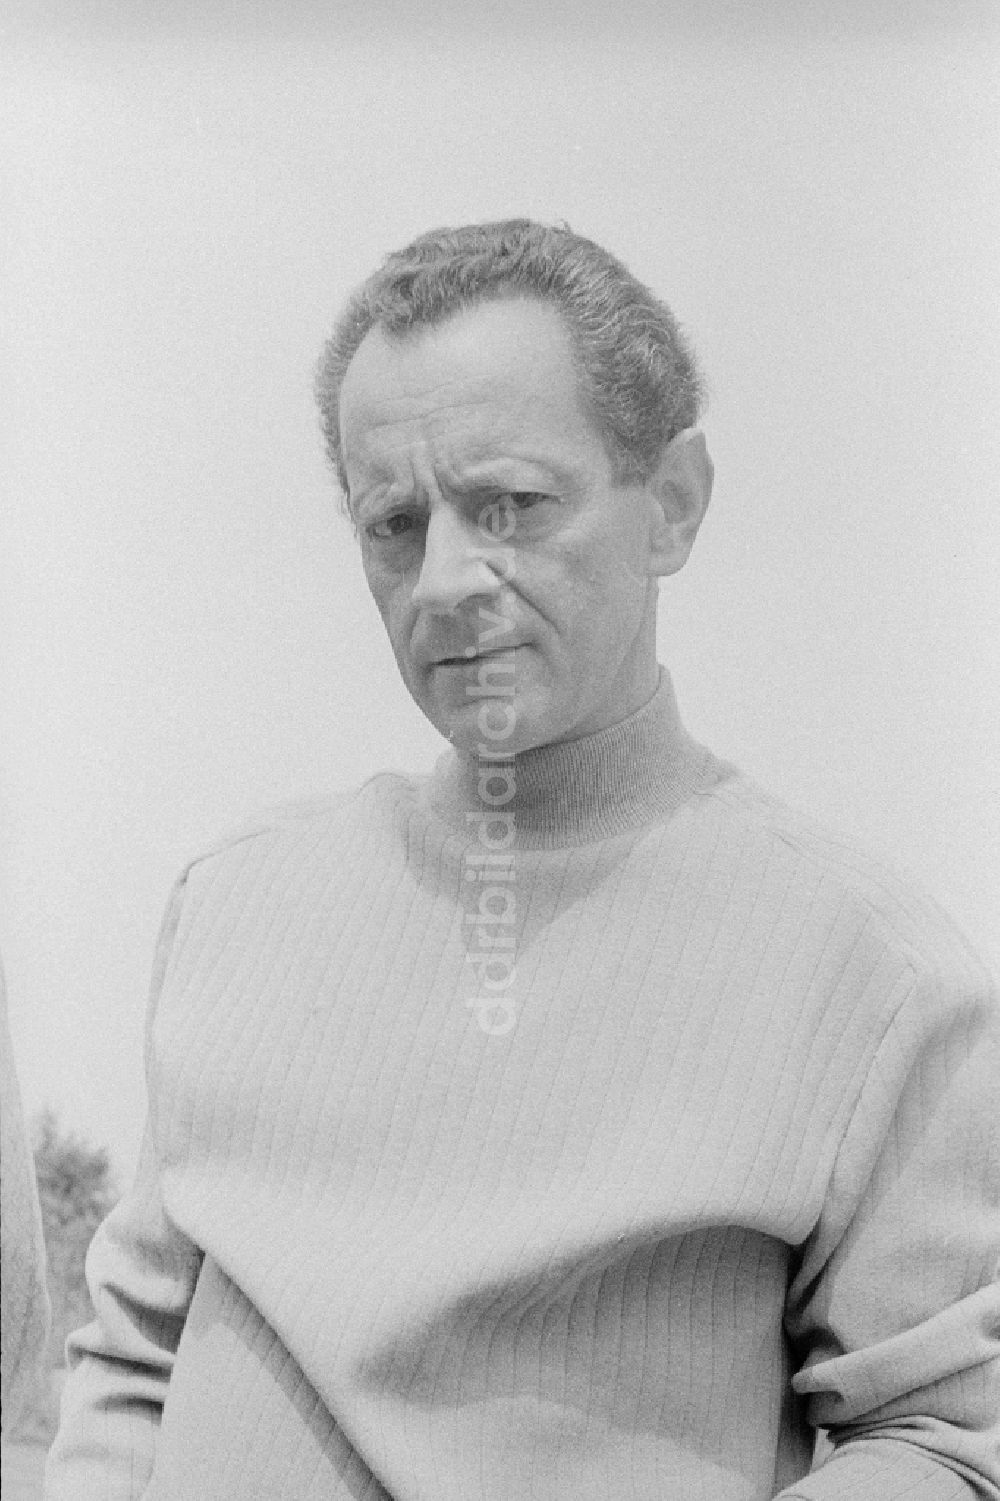 Zeuthen: Schriftsteller Dieter Noll (1927 - 2008) in Zeuthen in Brandenburg in der DDR